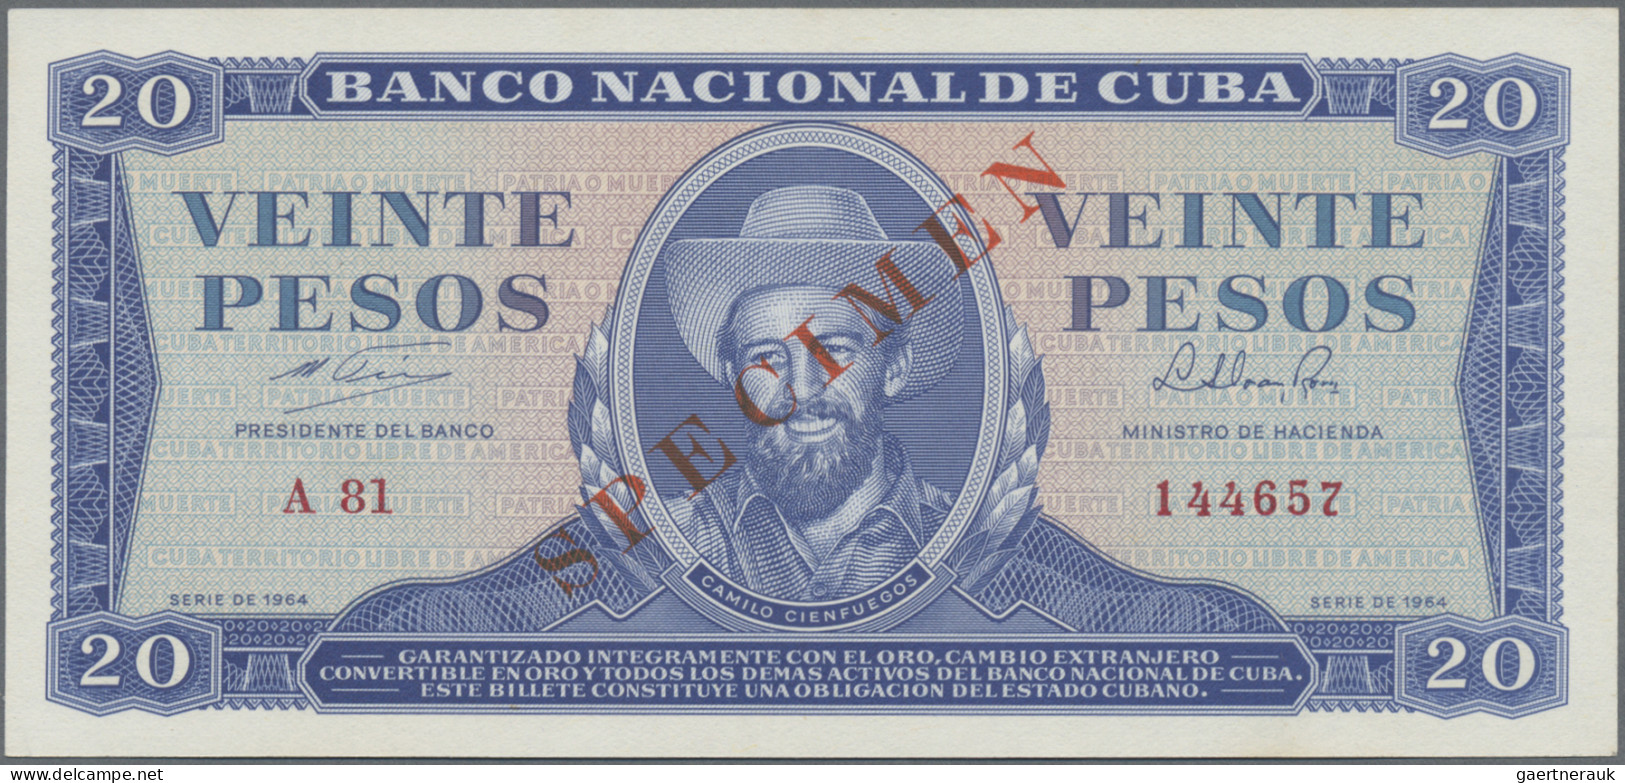 Cuba: Banco Nacional de Cuba, lot with 6 SPECIMEN, 1964-1983 series, with 1, 3,